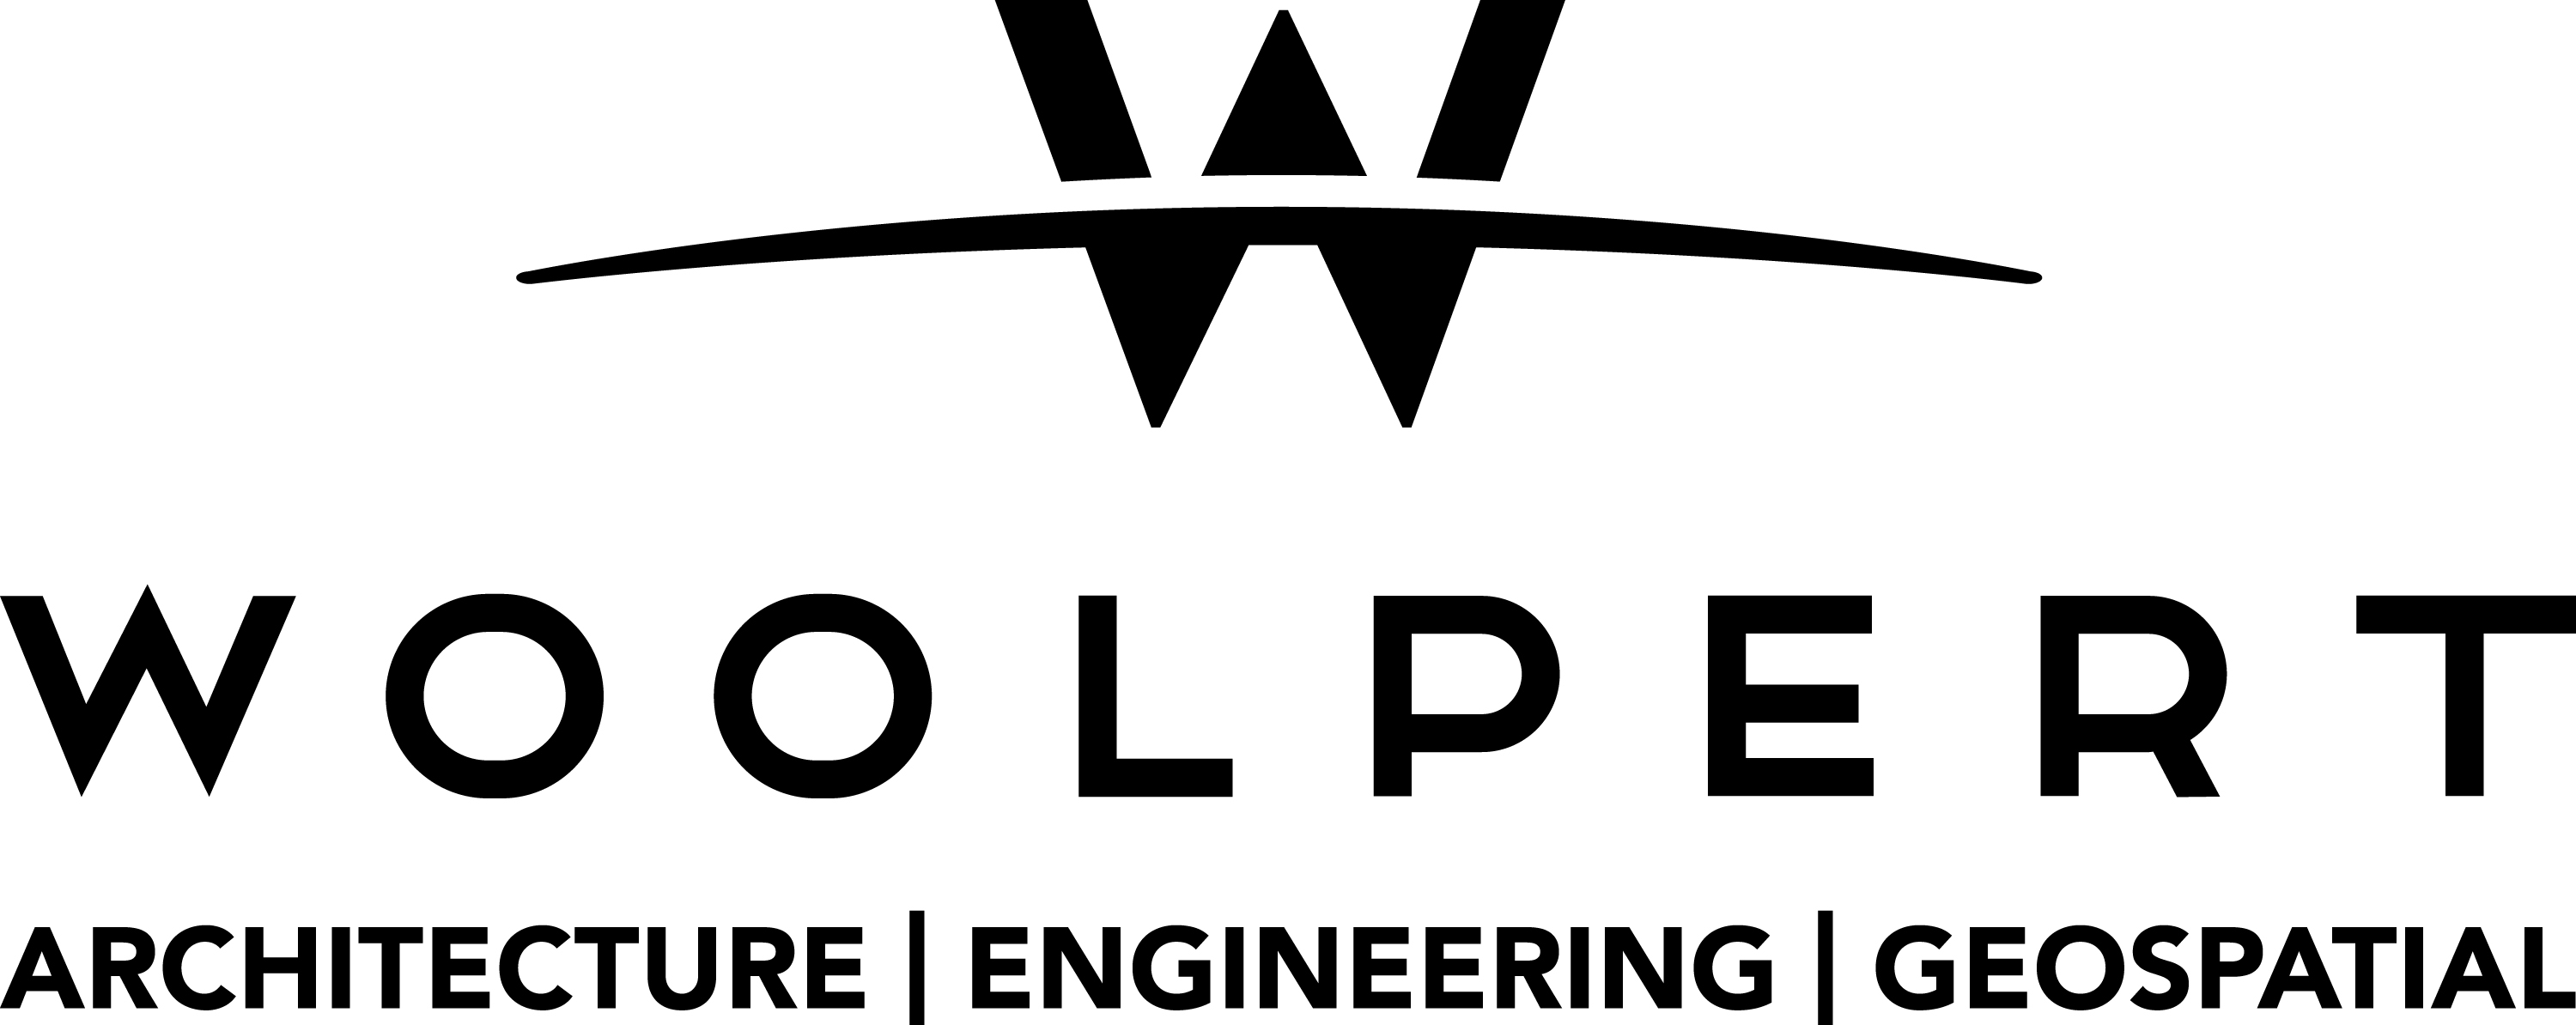 [Duplicate] Woolpert